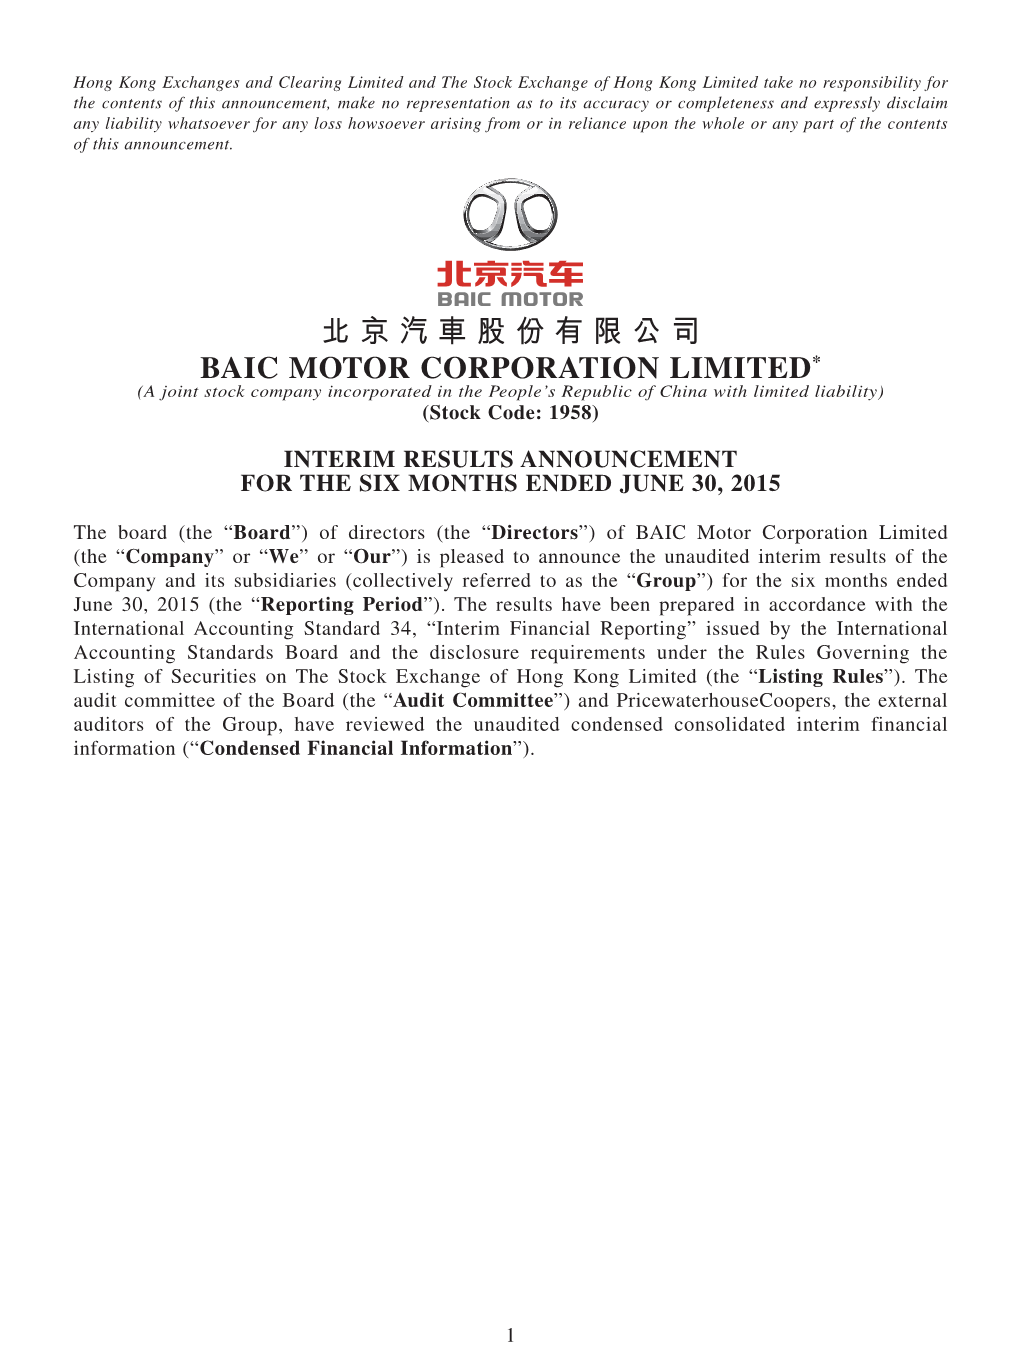 北京汽車股份有限公司 BAIC MOTOR CORPORATION LIMITED* (A Joint Stock Company Incorporated in the People’S Republic of China with Limited Liability) (Stock Code: 1958)